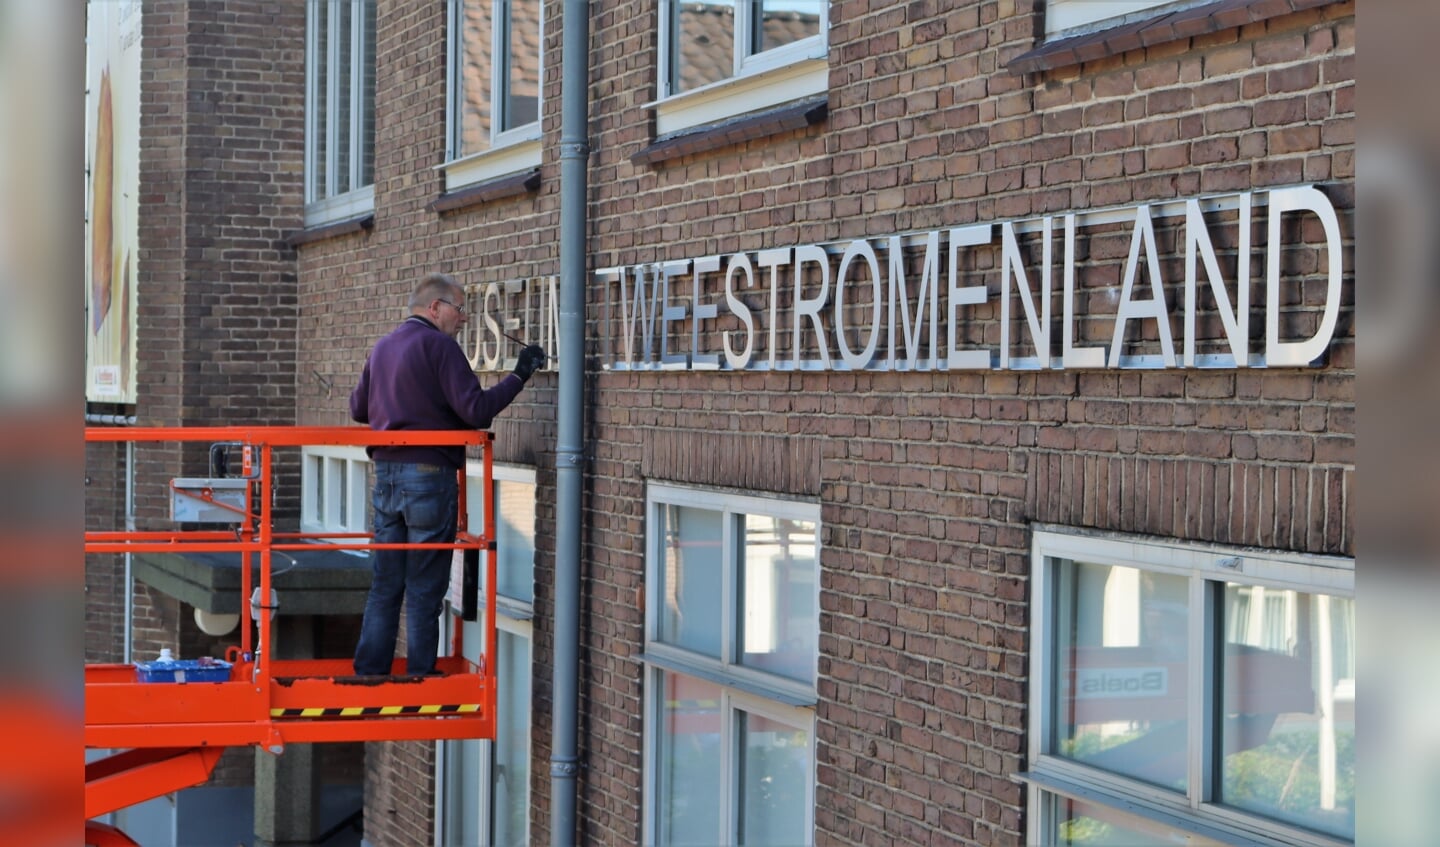 NL Doet actie bij het Tweestromenland Museum in Beneden-Leeuwen